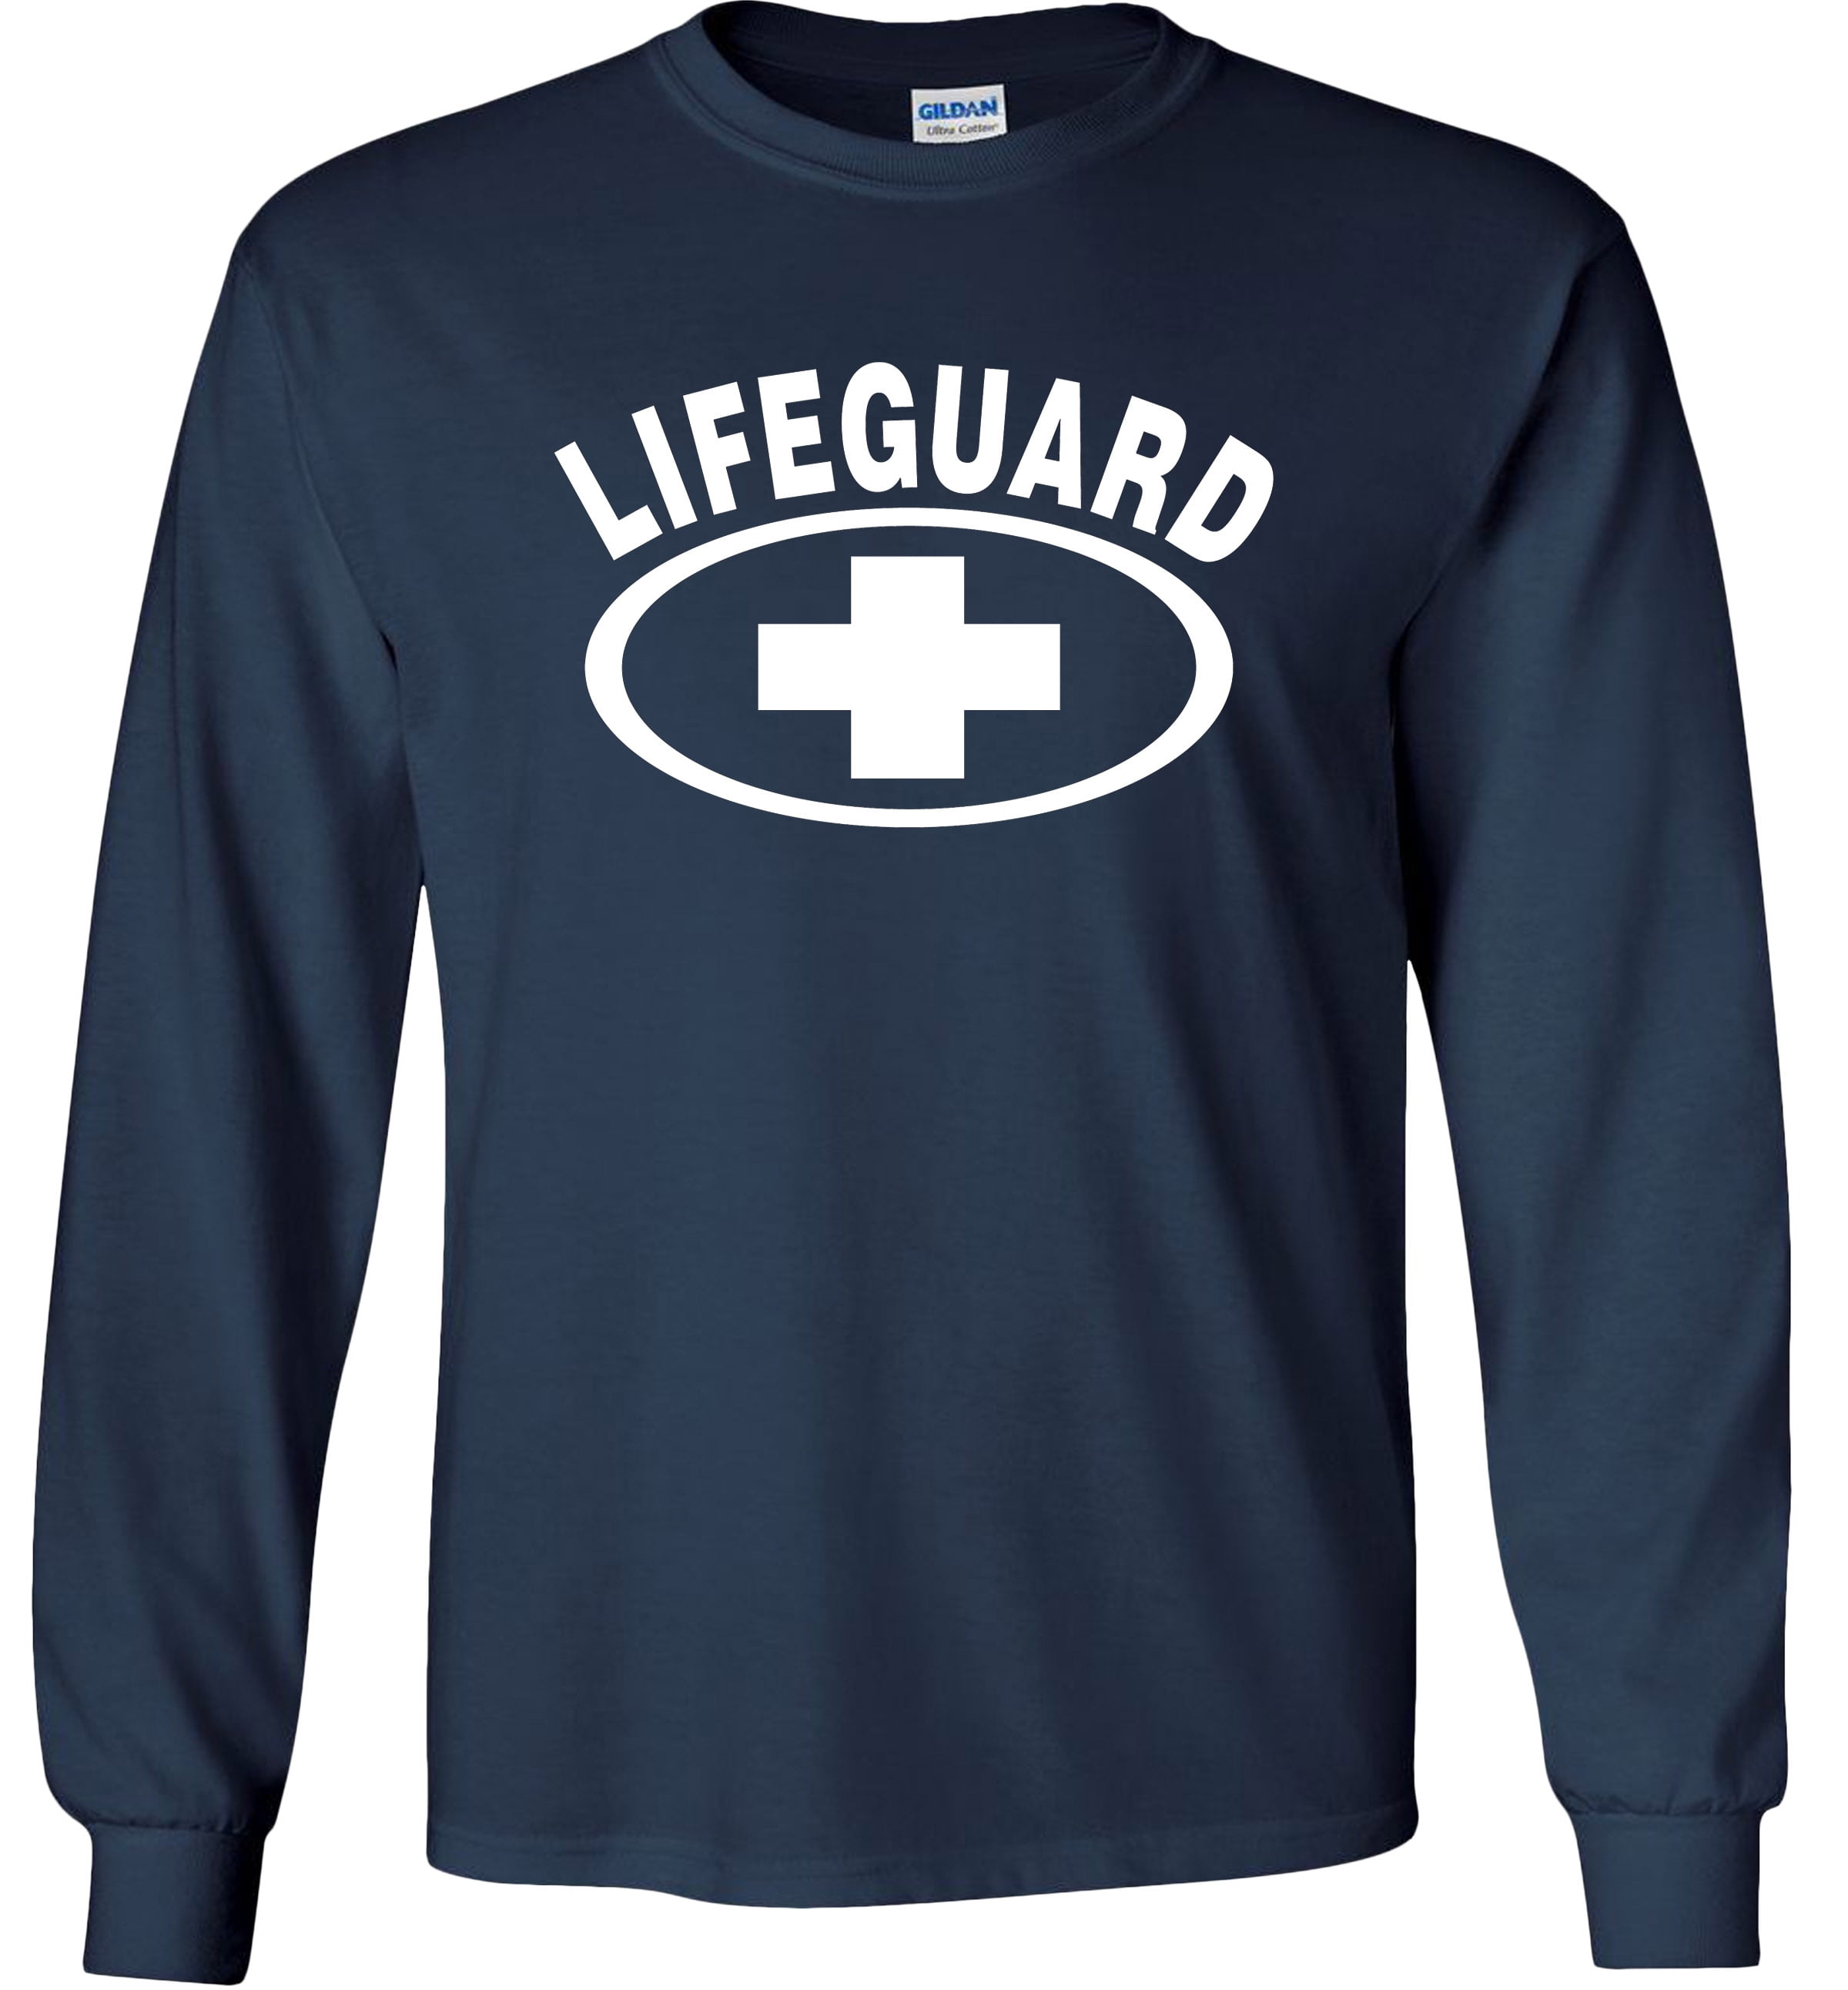 Fair Game Life Guard Long Sleeve Shirt Lifeguarding Uniform Lifeguard ...